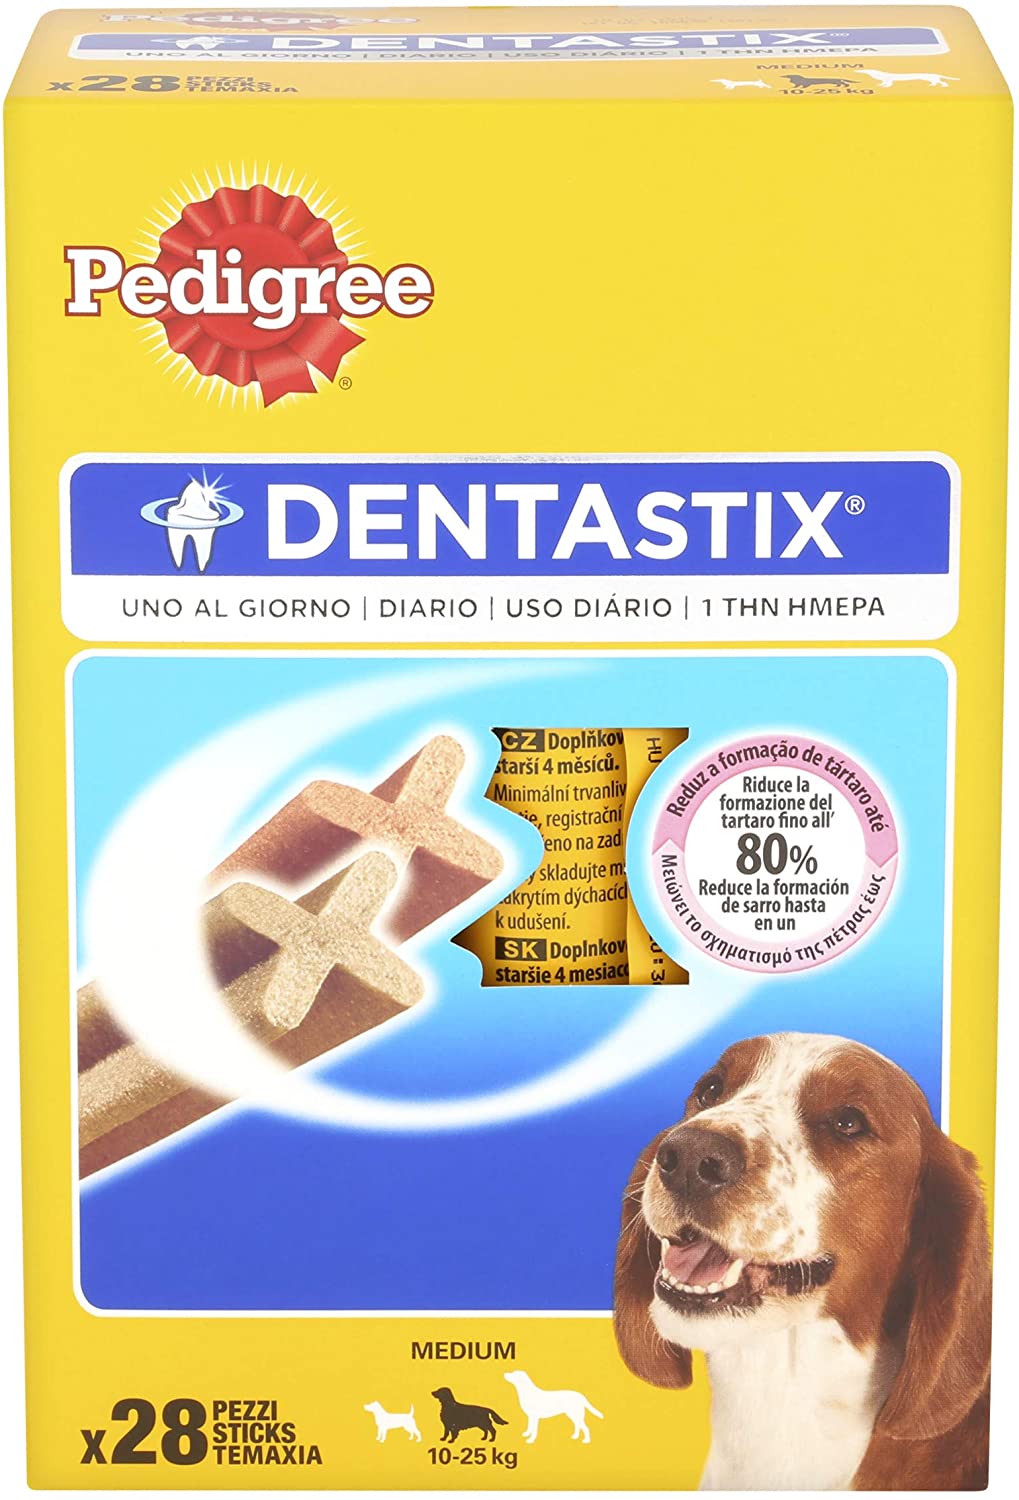  PEDIGREE Pack de 28 Dentastix de Uso Diario para La Limpieza Dental de Perros Medianos 784 g - Pack de 4 